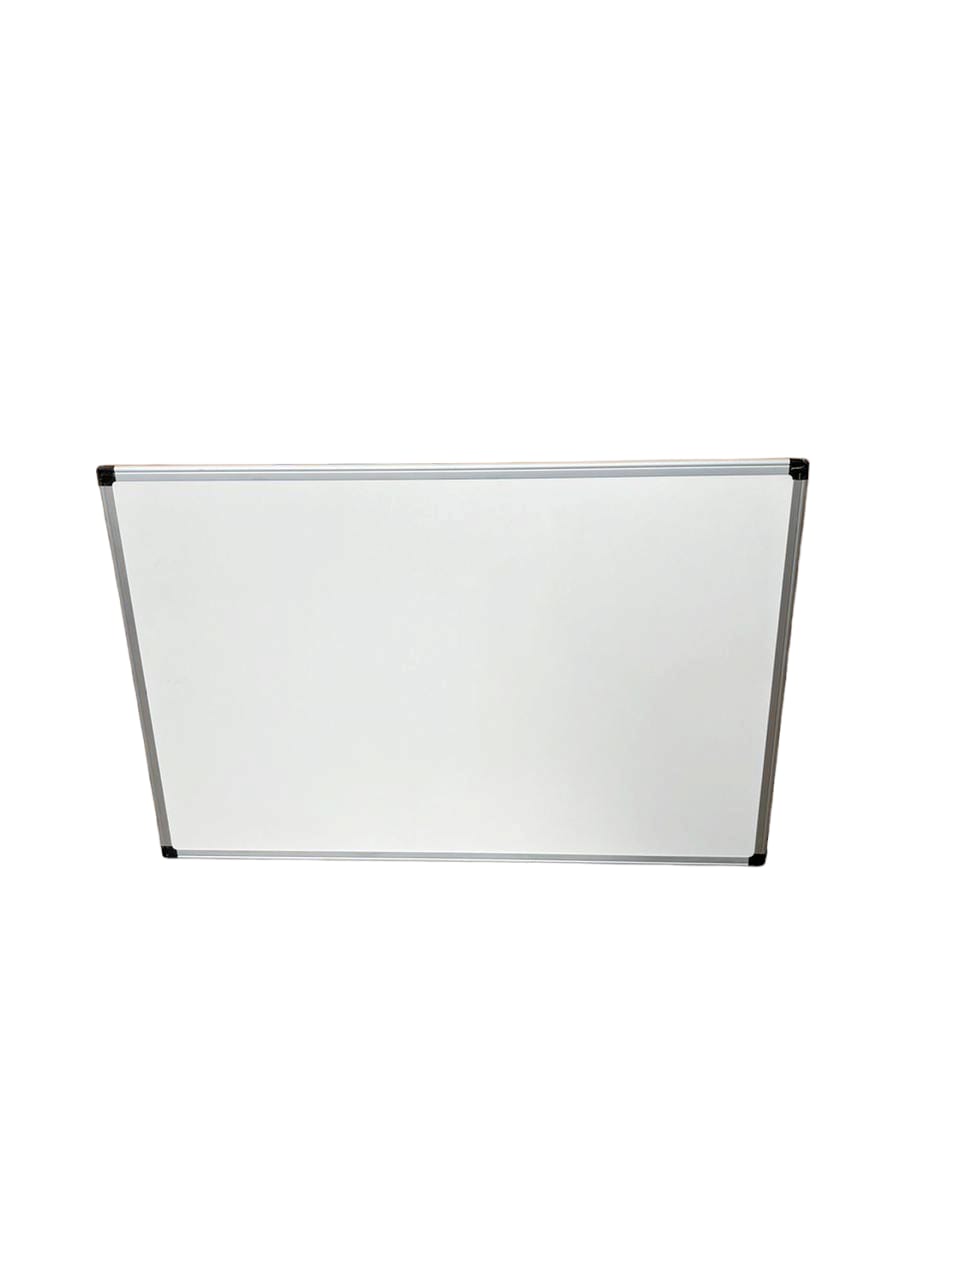 Tableau blanc magnétique à fixation murale - 122 x 92 cm (l x H